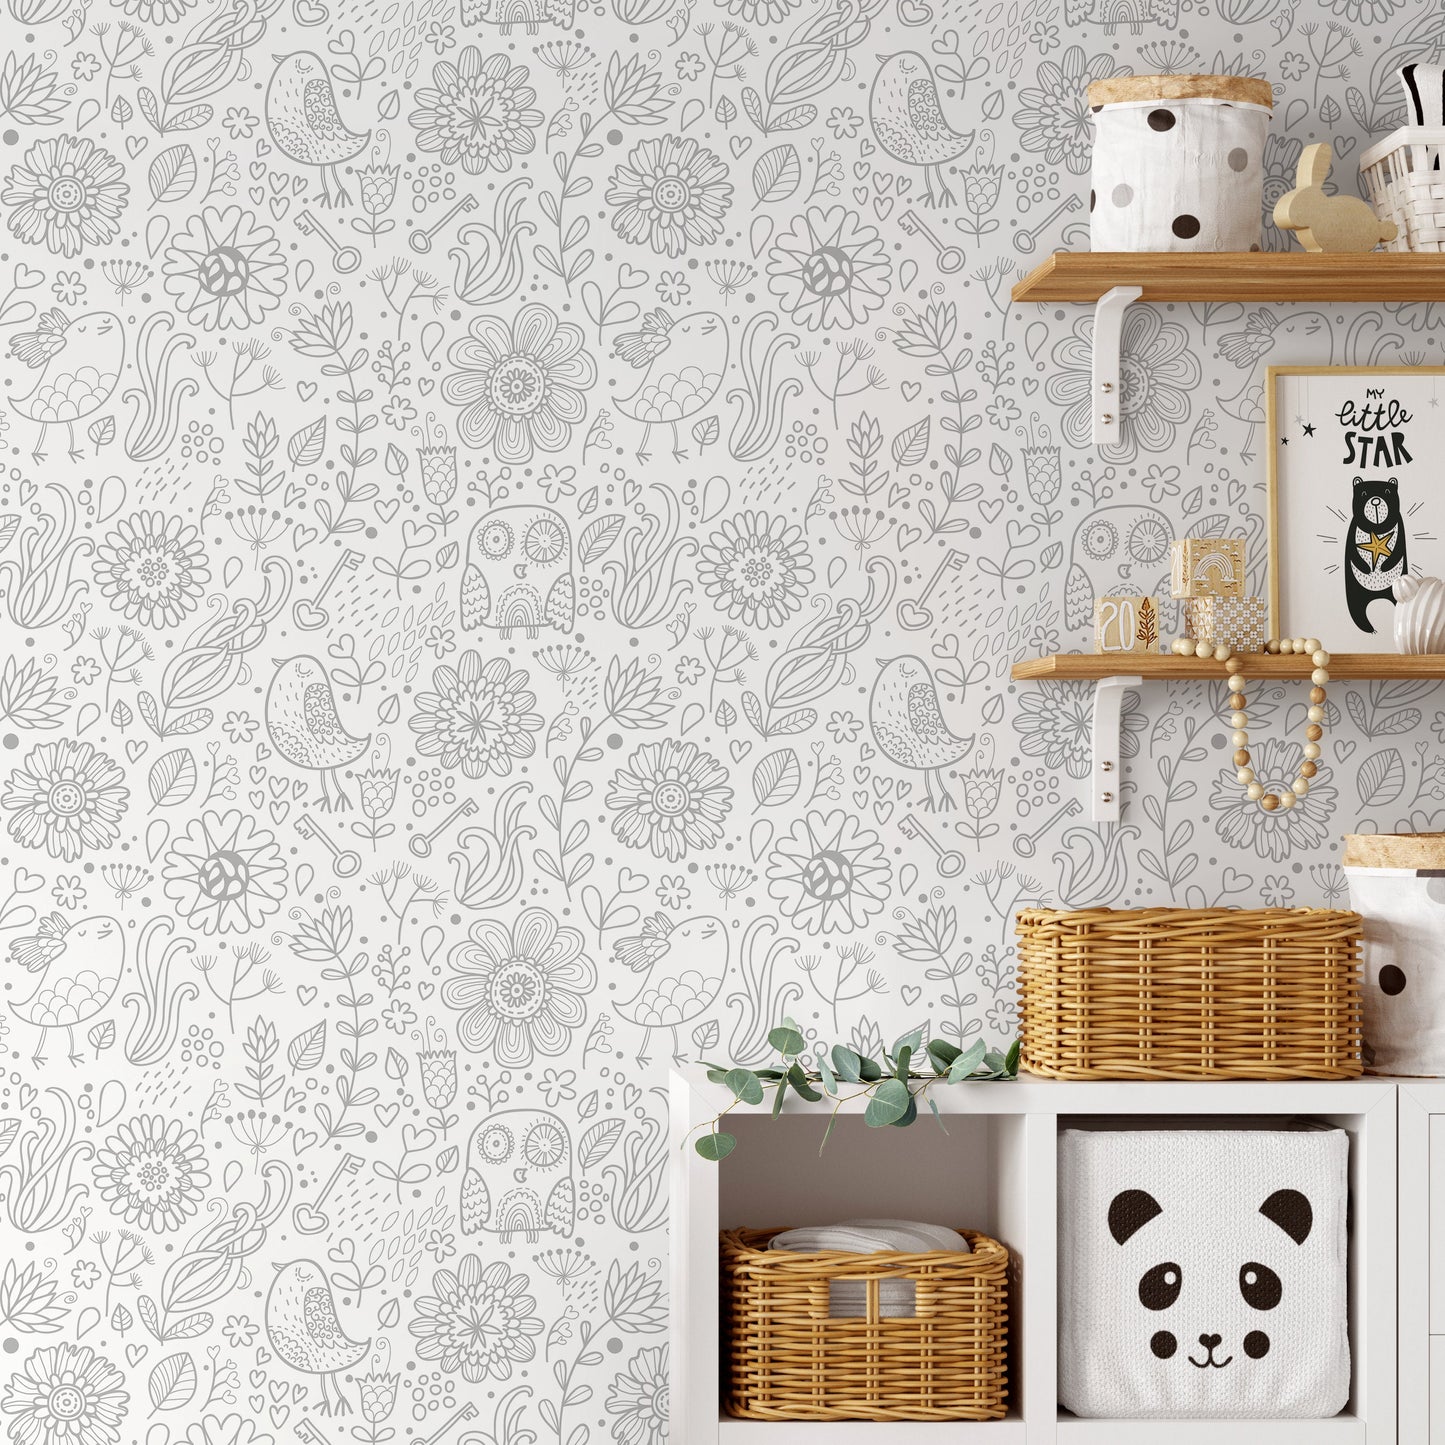 Removable Wallpaper Scandinavian Wallpaper Plants Wallpaper Peel and Stick Wallpaper Wall Paper - A452